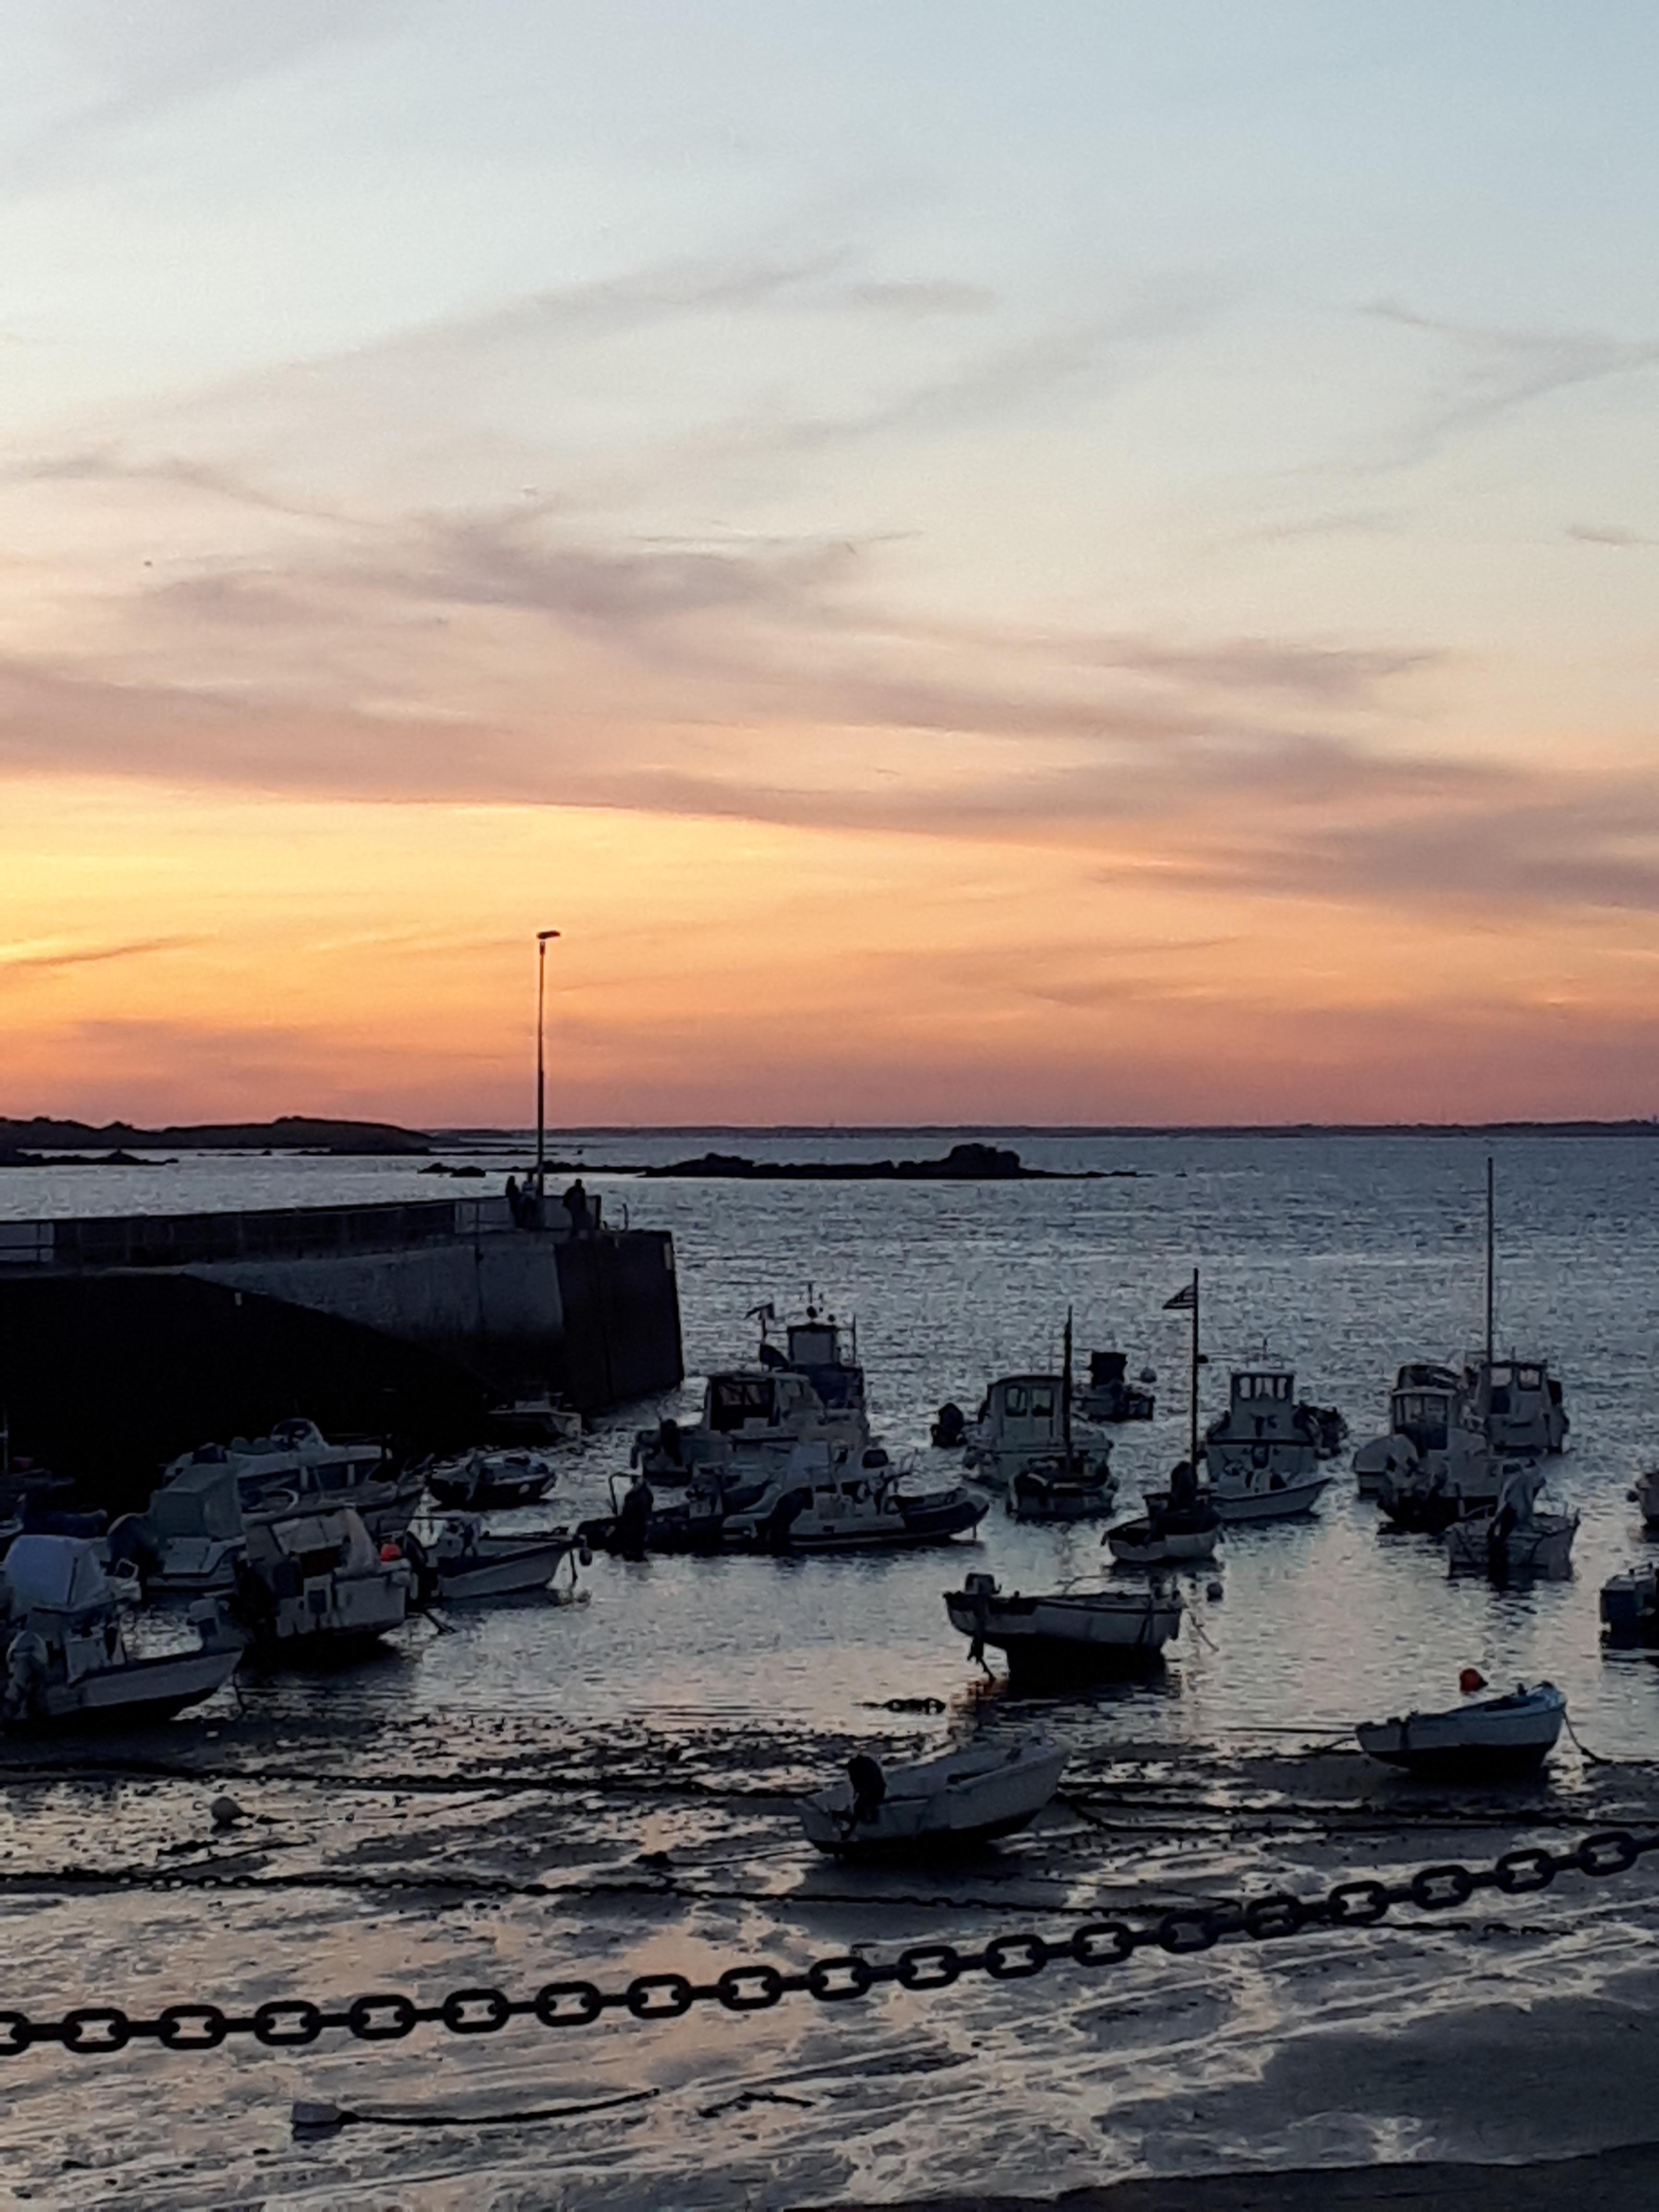 Adieu Bretagne! Letzte, herrlich lange und warme Tage auf der Quibéron-Halbinsel - bis zum Sonnenuntergang!